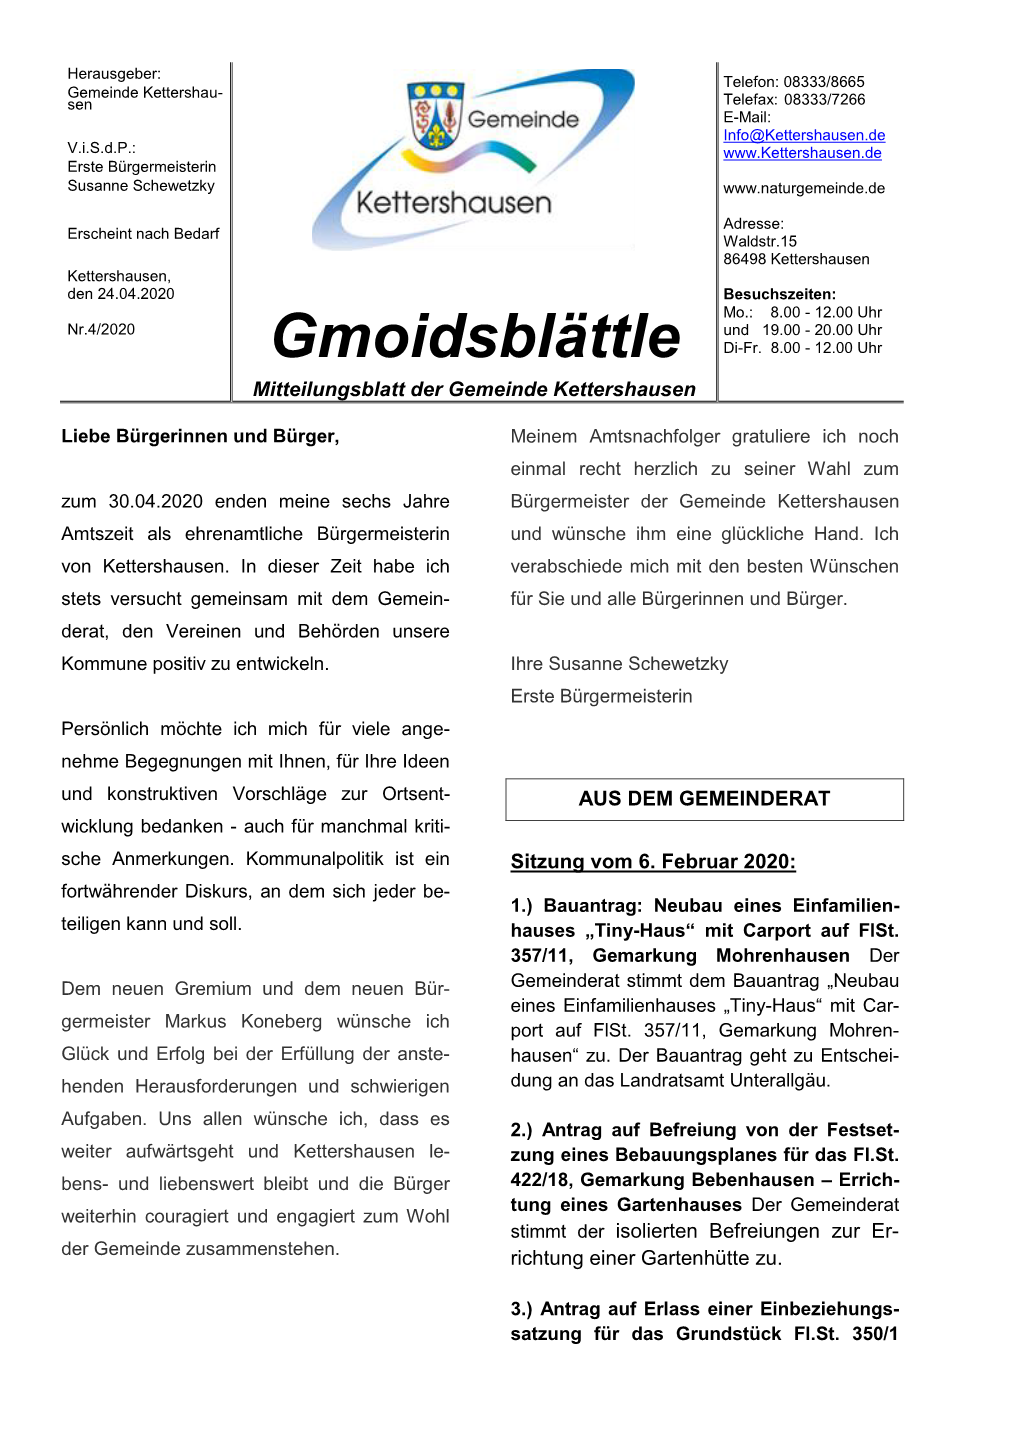 Mitteilungsblatt 4/2020